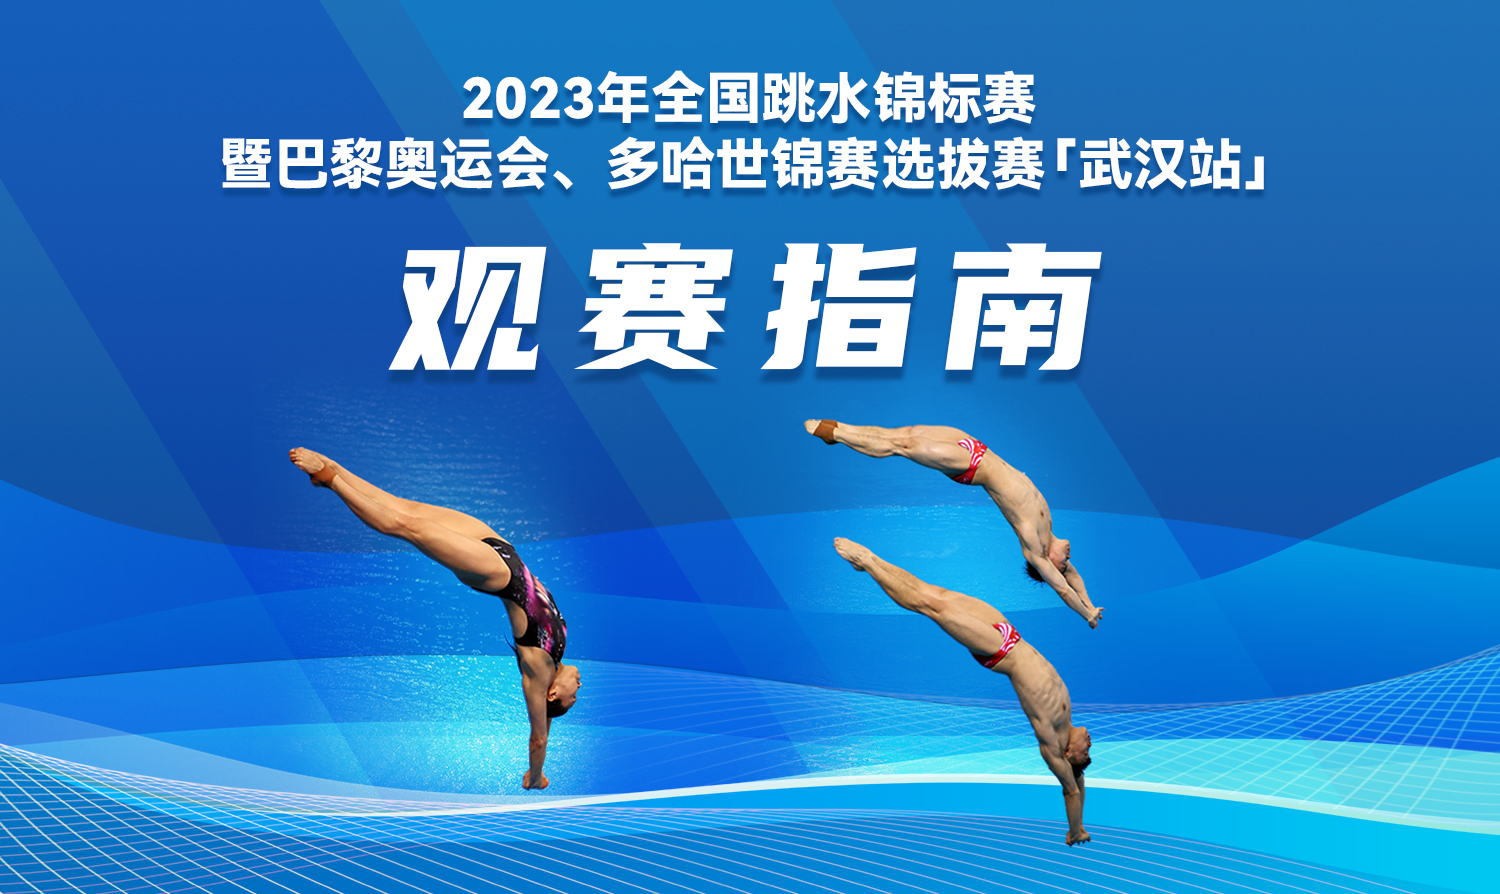 【观赛指南】2023全国跳水锦标赛暨巴黎奥运会、多哈世锦赛选拔赛